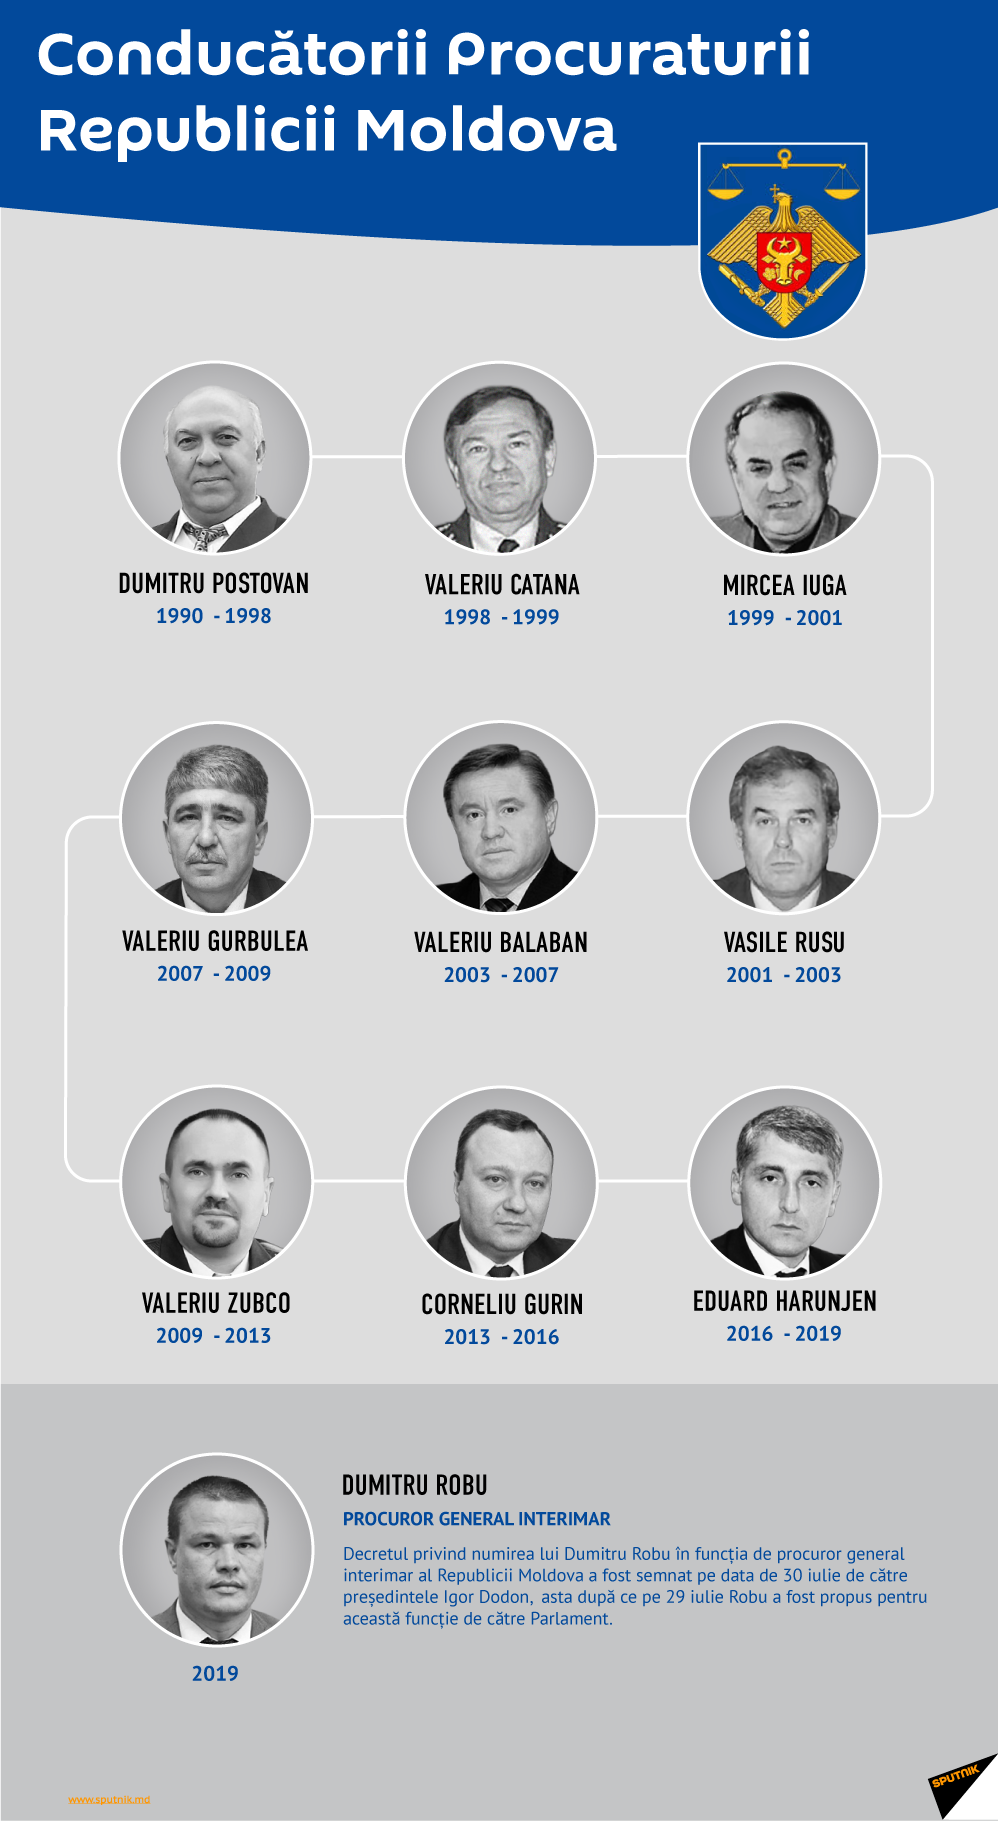 Conducătorii Procuraturii Republicii Moldova - Sputnik Moldova